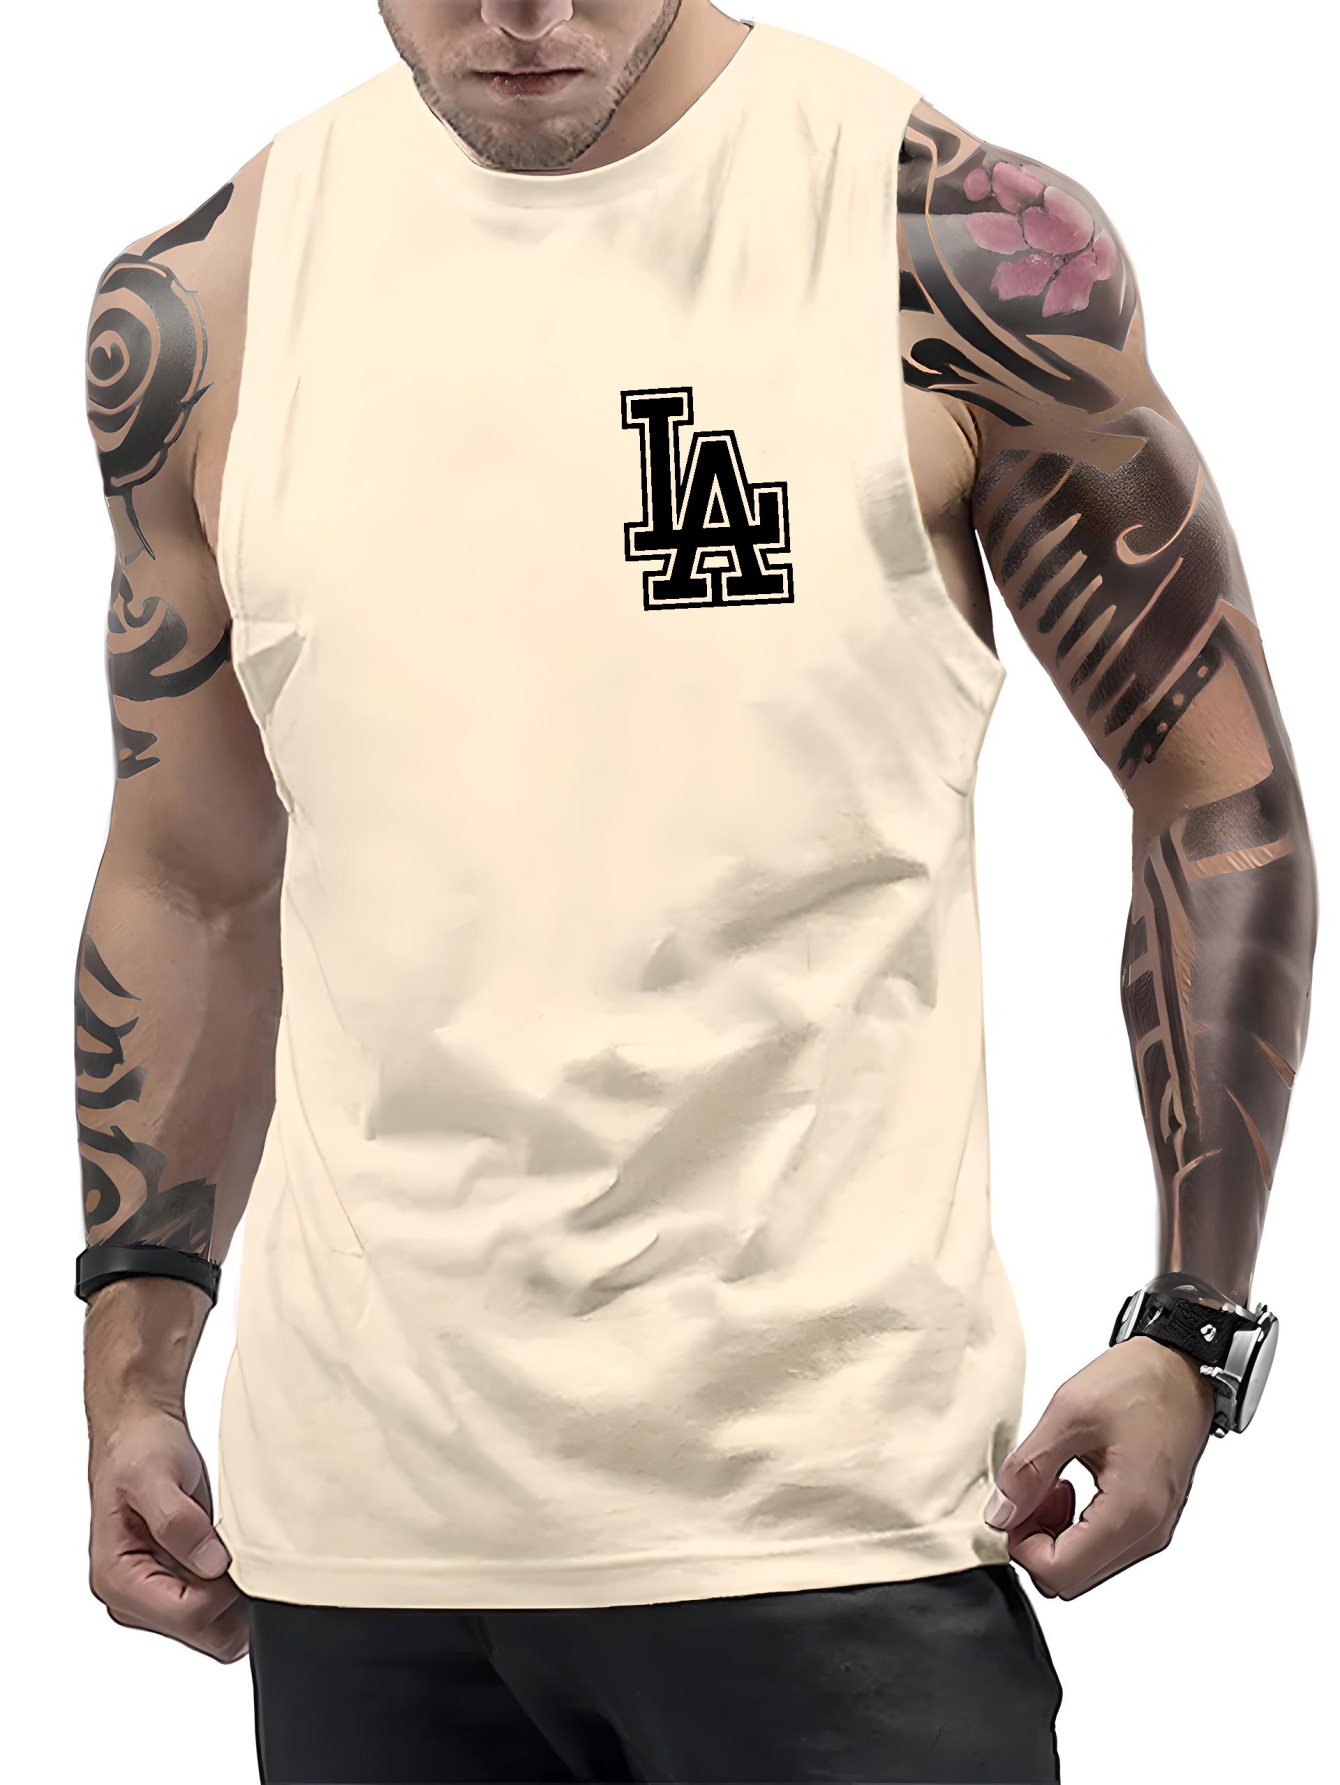 Men's A-shirt Tanks, Dry Fit Sleeveless Tank Top, Lightweight